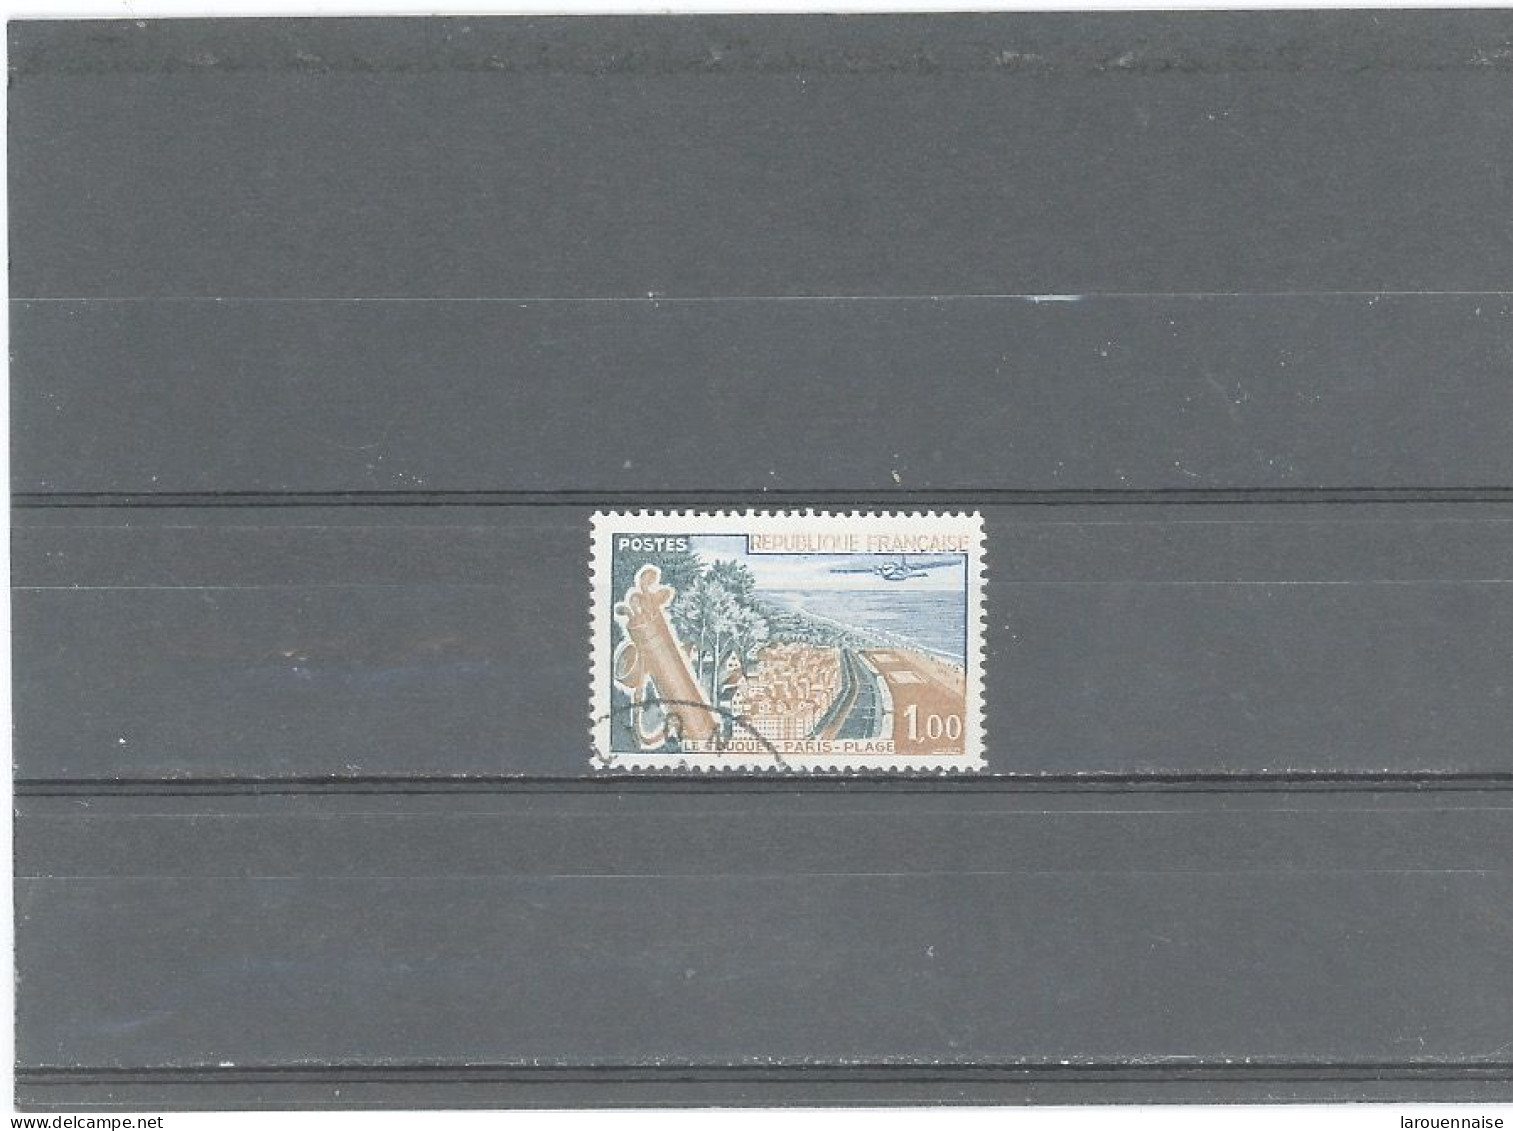 VARIÉTÉS -N°1355- Obli - LE TOUQUET - LETTRE EVIDÉES -BLANCHES - (Cérès 1355j) - Used Stamps